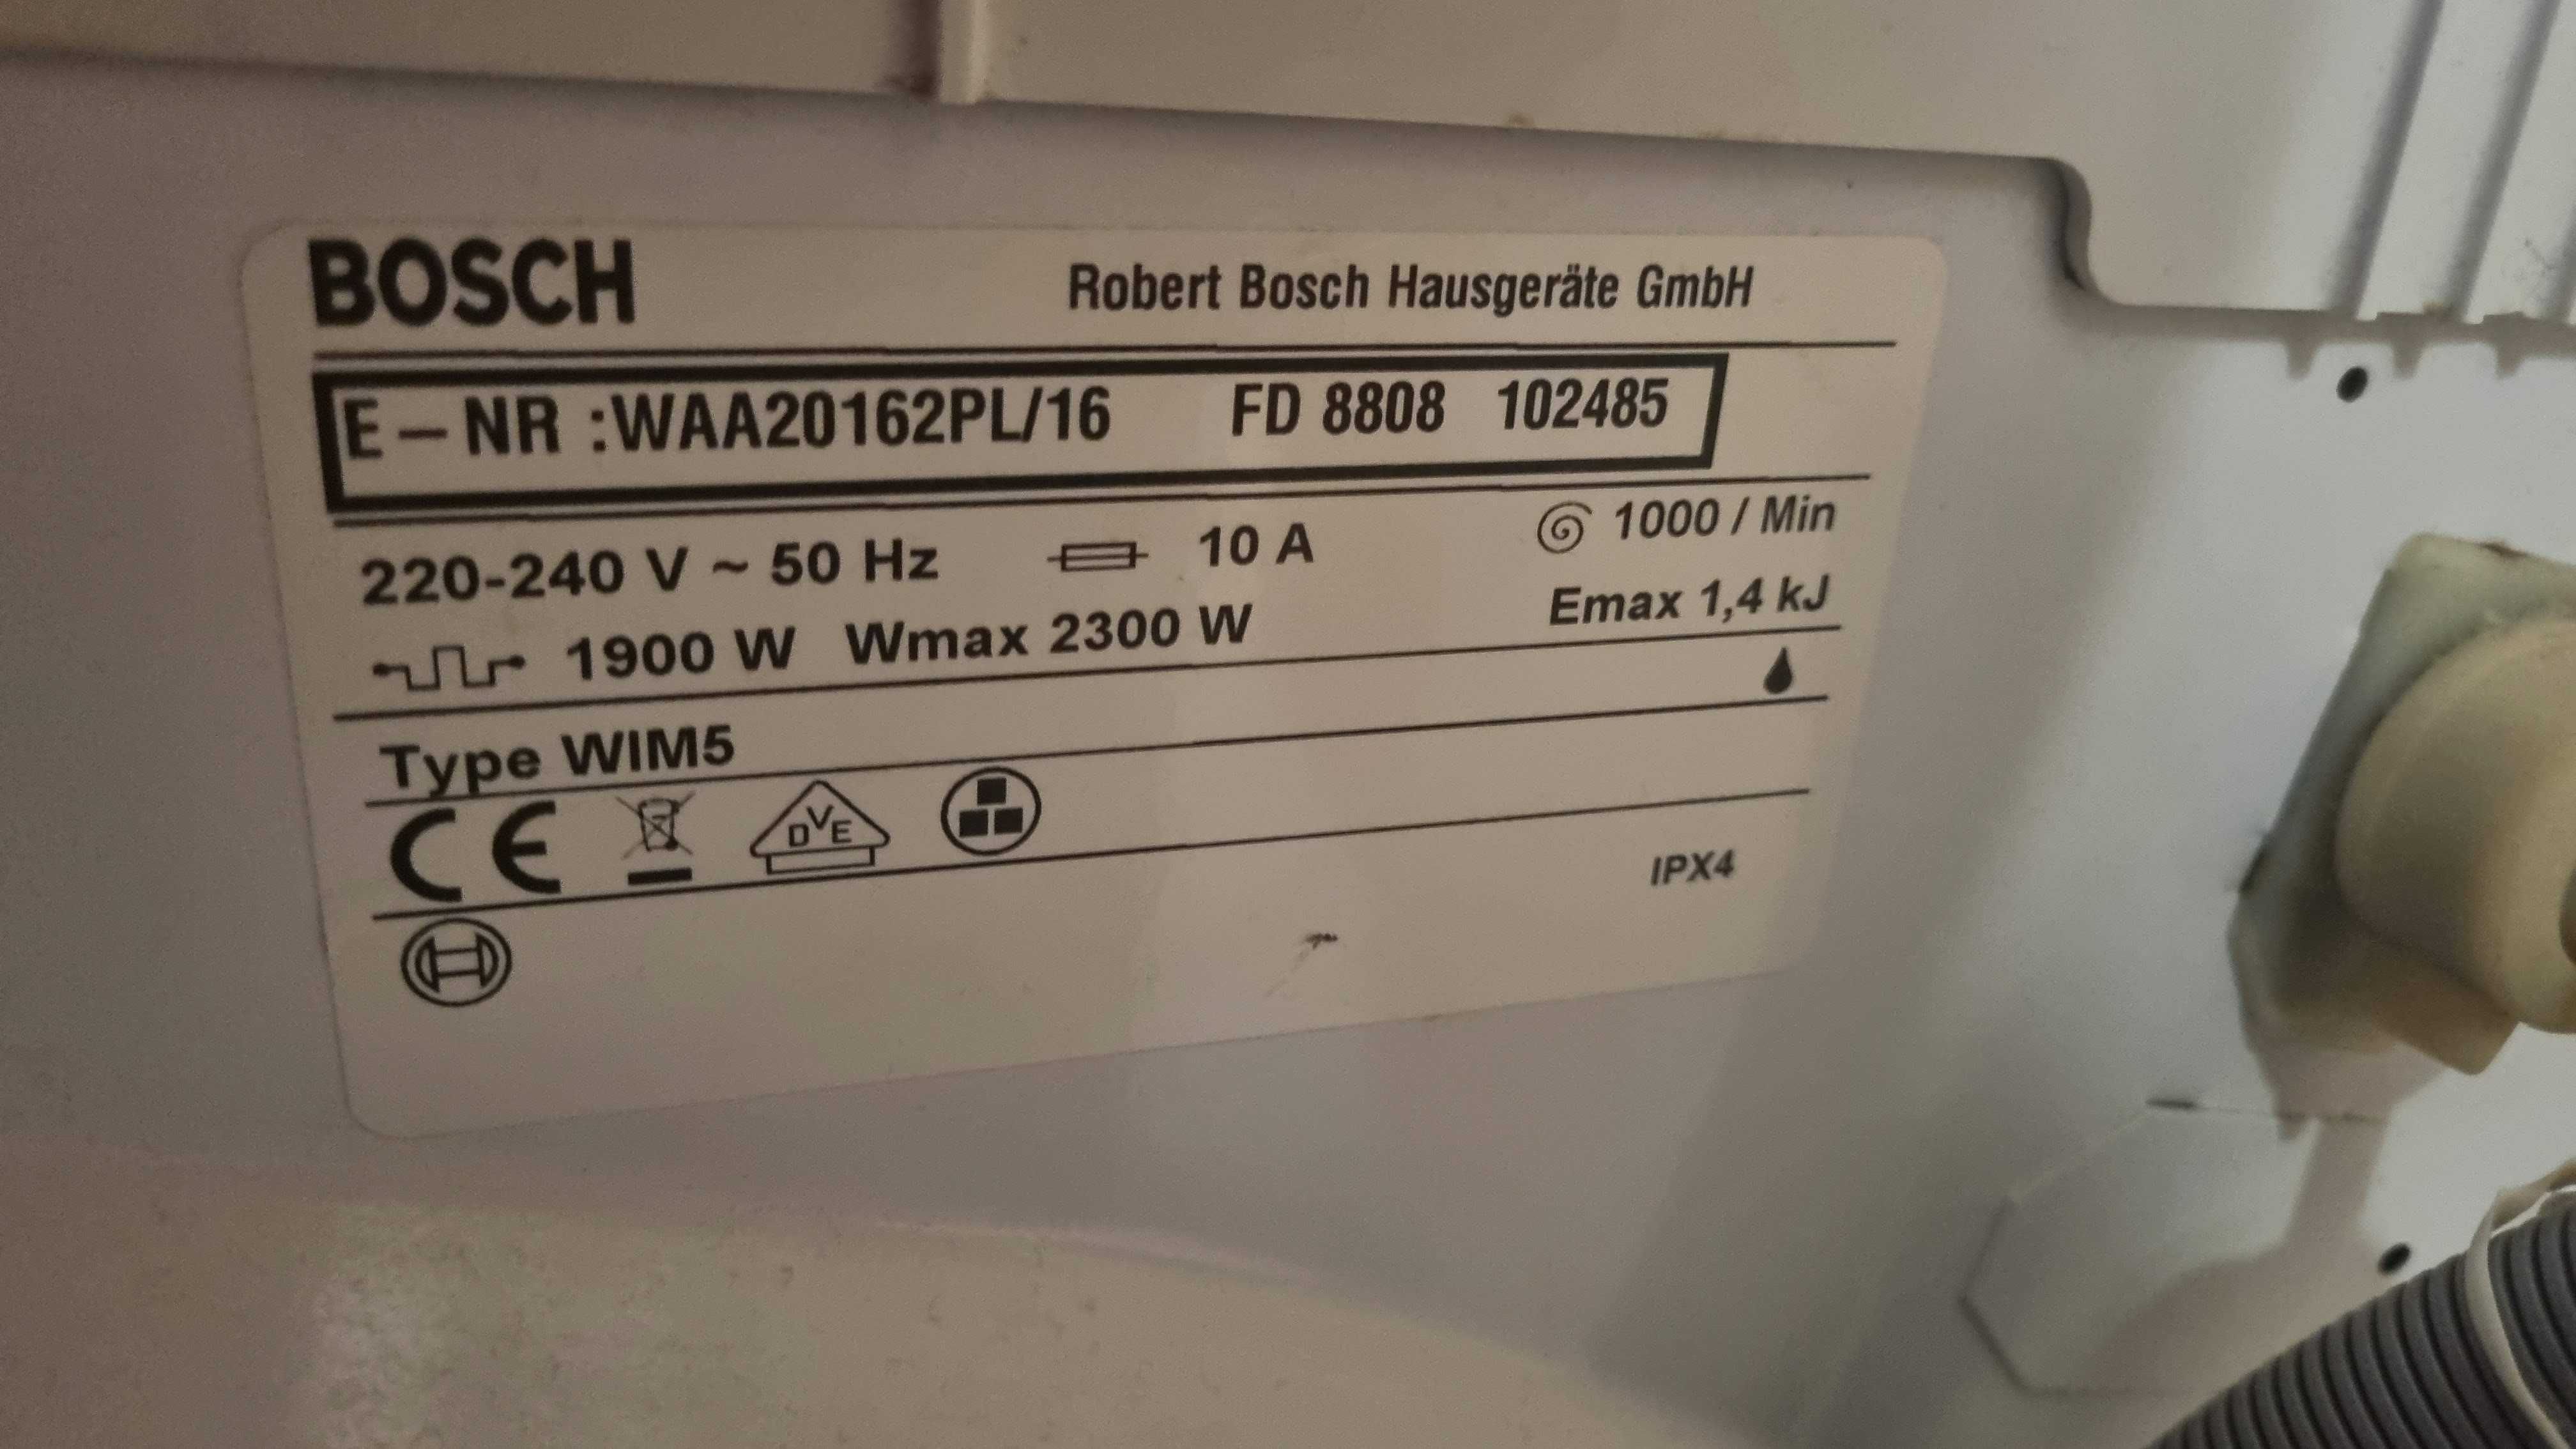 Części do pralki BOSH WAA20162PL/16 elektronika, gumy, itd.